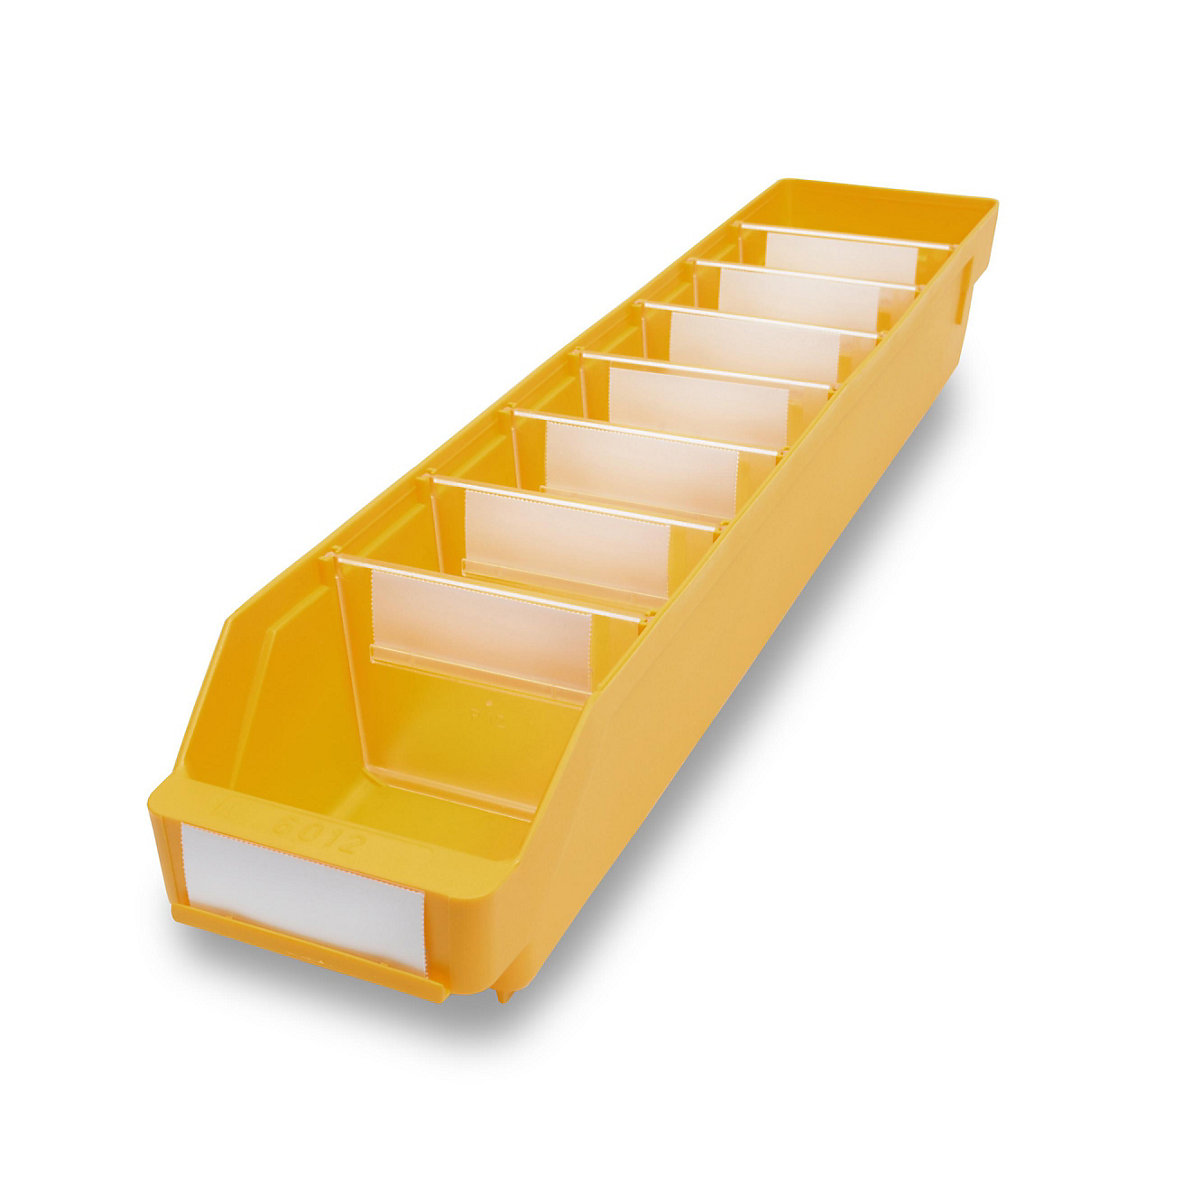 STEMO Regalkasten aus hochschlagfestem Polypropylen, gelb, LxBxH 600 x 118 x 95 mm, VE 30 Stk